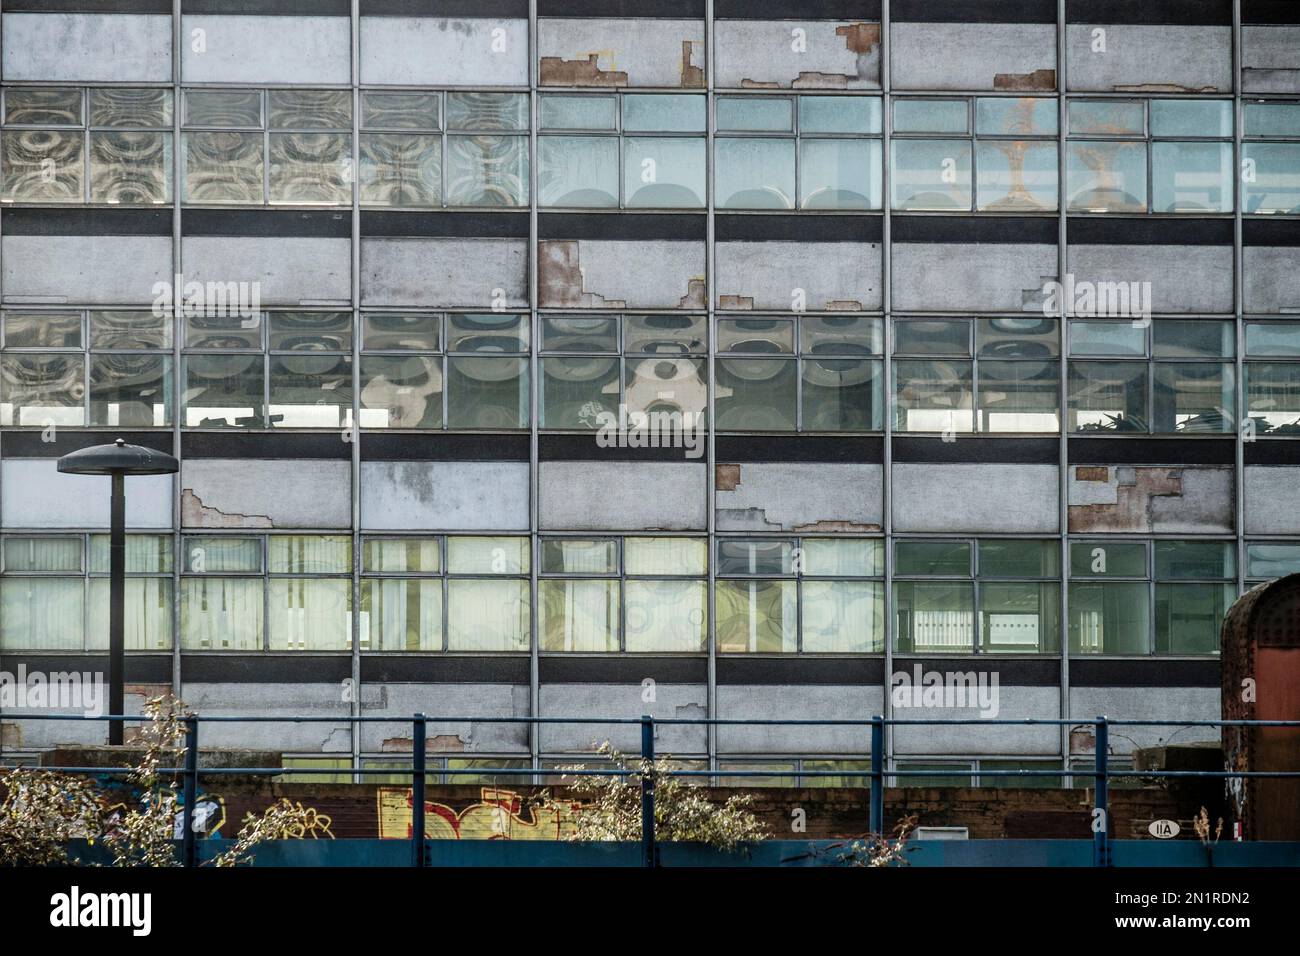 La façade en ruines du Tower Building,1960s bureaux adjacents à la gare de Waterloo prévus pour la démolition et le réaménagement du site. Londres. ROYAUME-UNI Banque D'Images